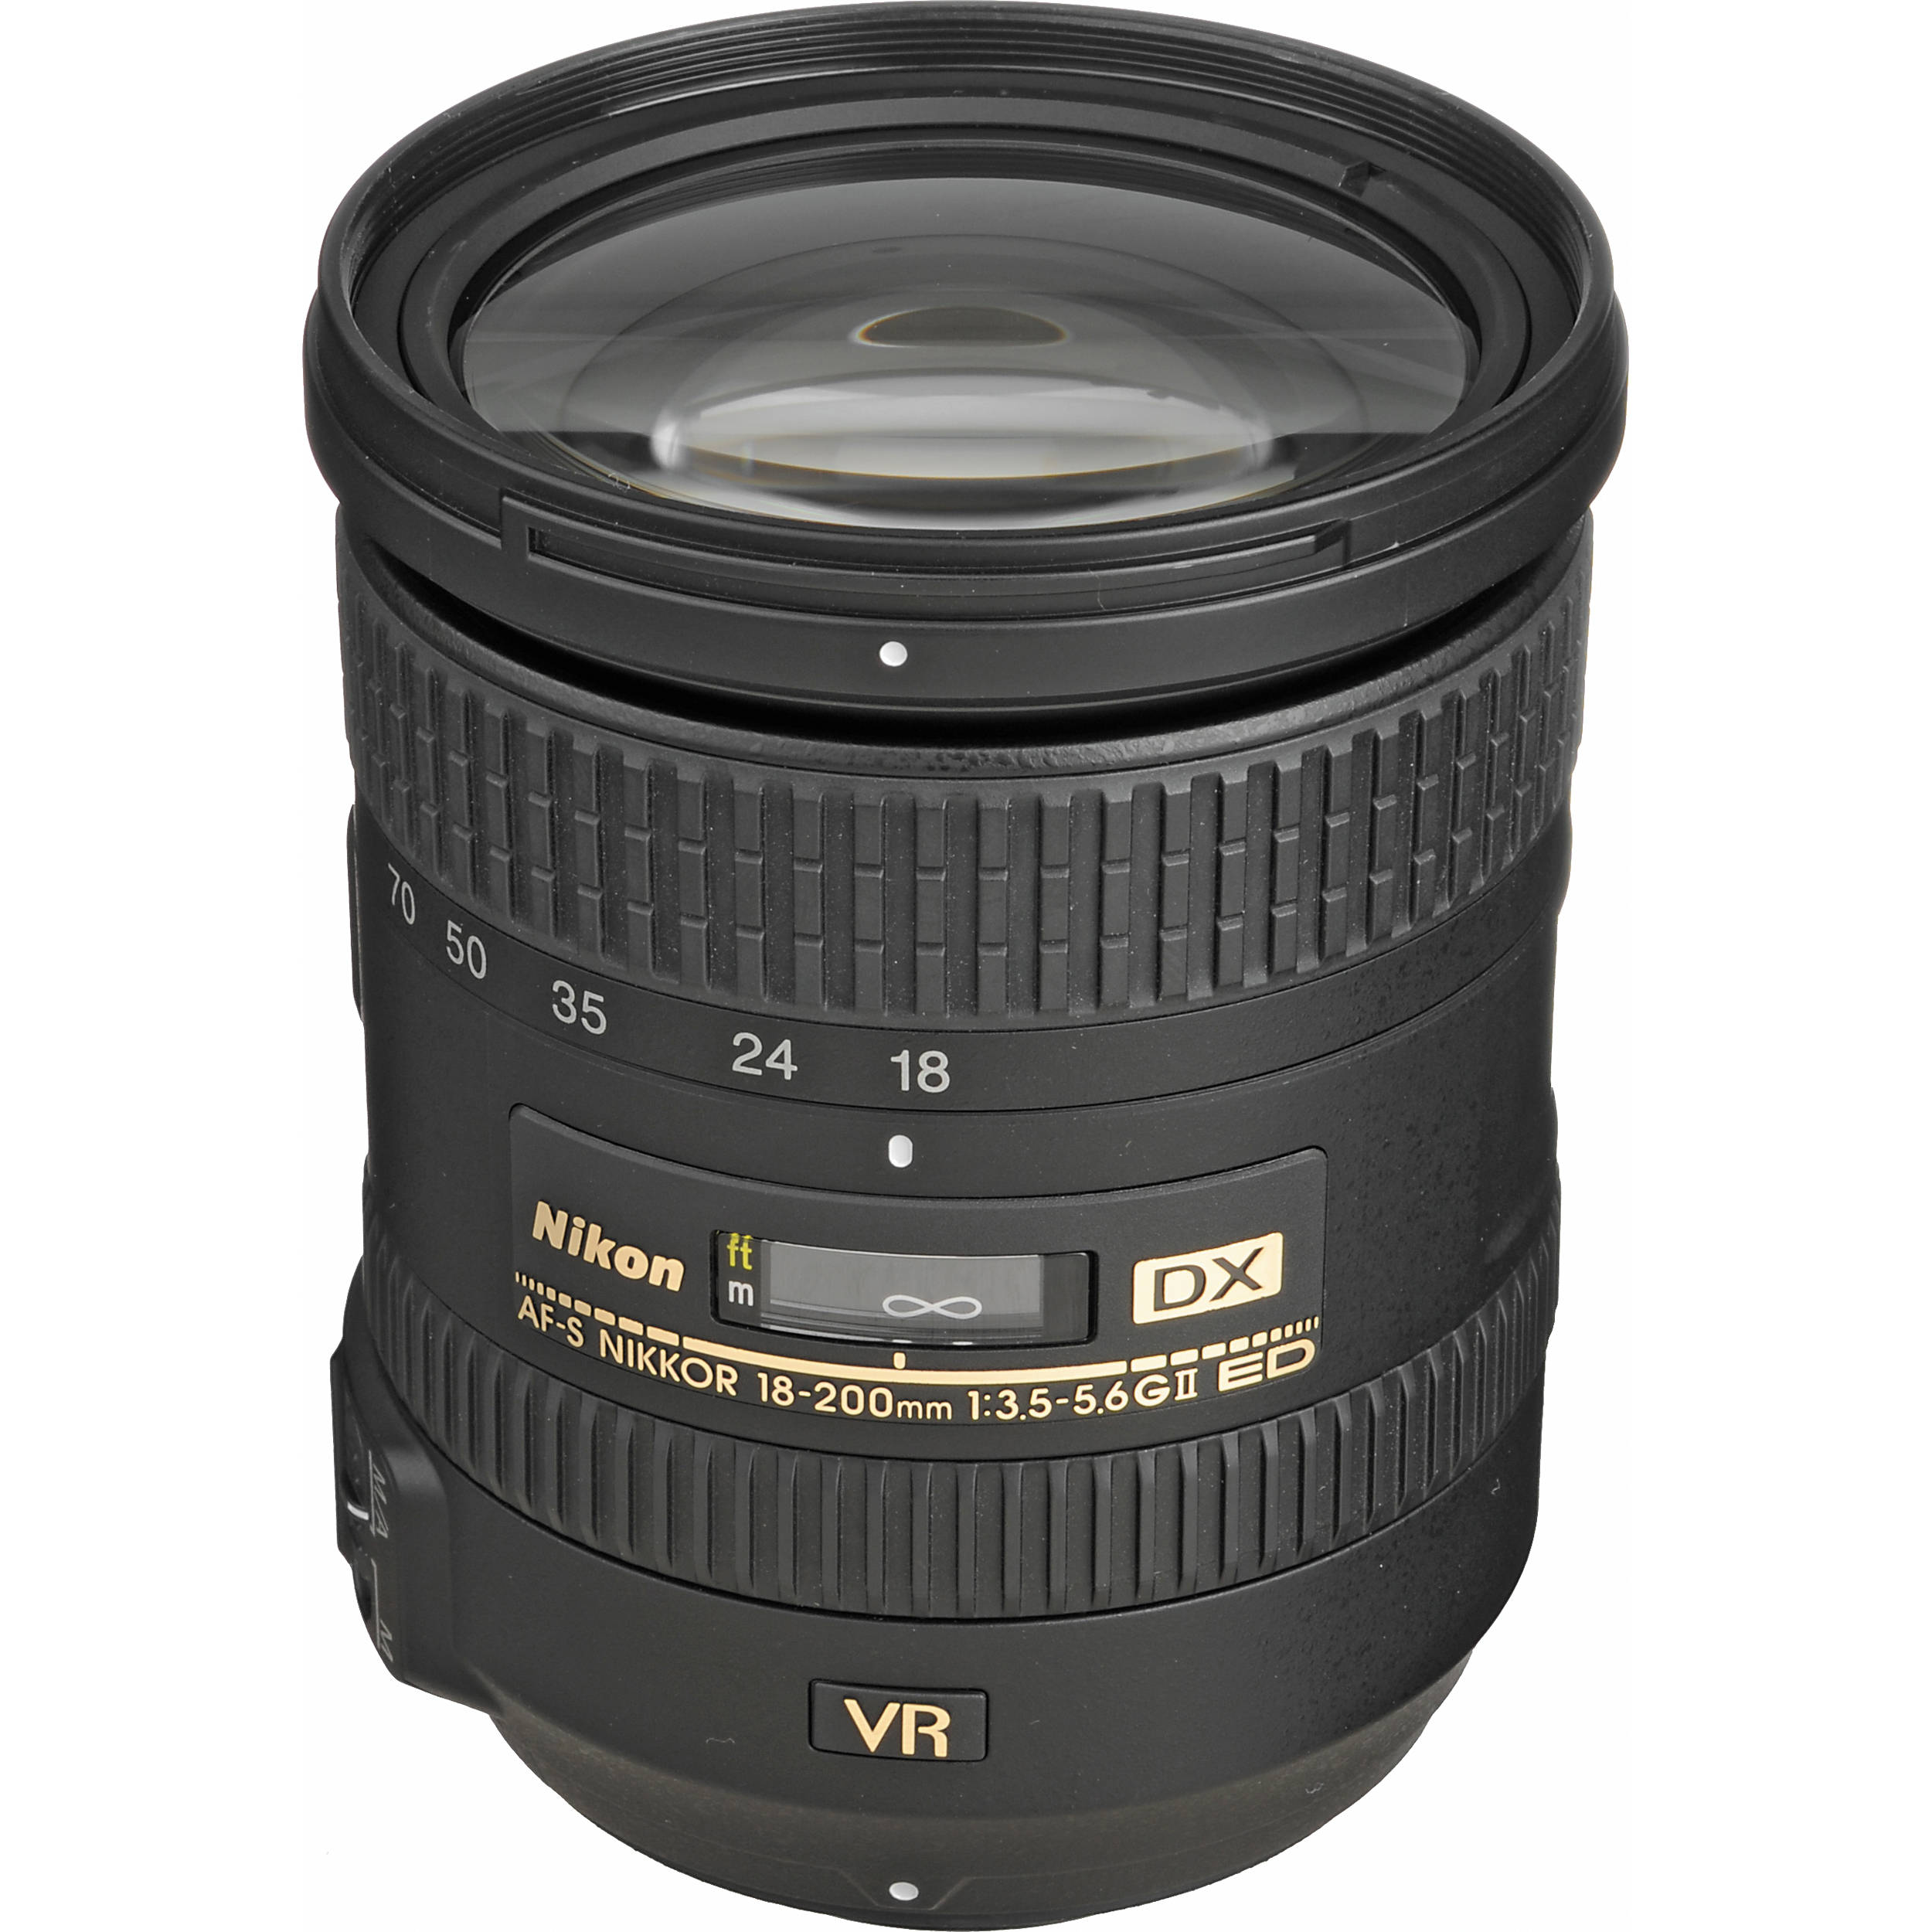 Nikon AF-S DX Nikkor 18-200mm F/3.5-5.6G ED VR II (Mới 100%) - Bảo hành chính hãng VIC-VN 01 năm trên toàn quốc Cover